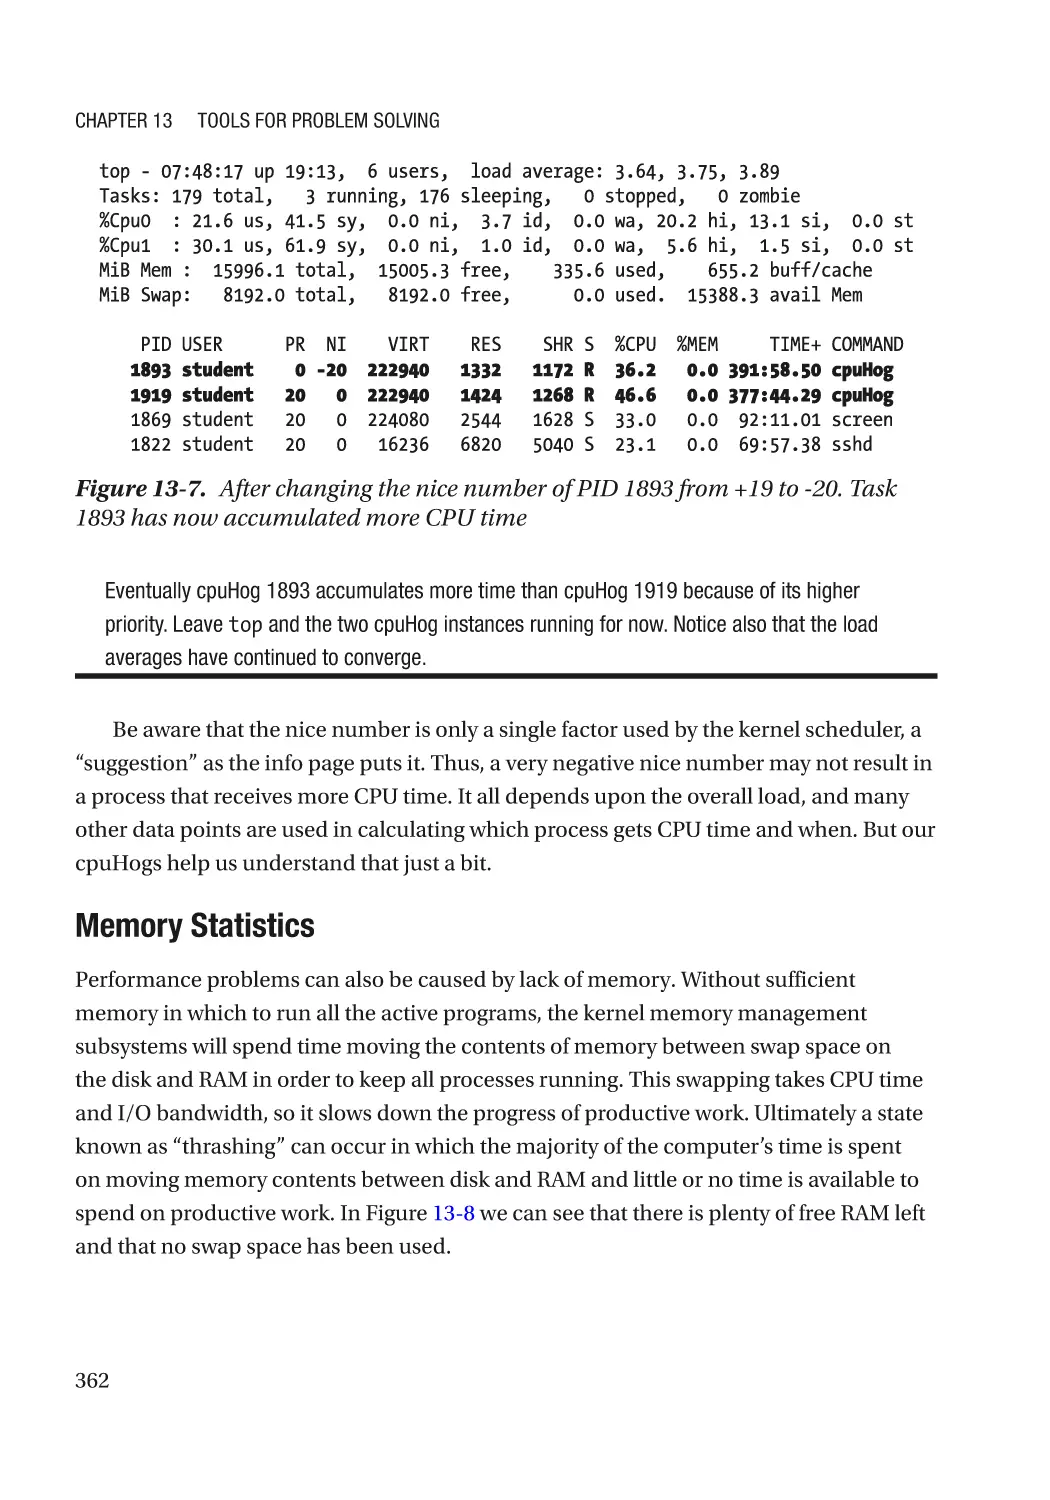 Memory Statistics